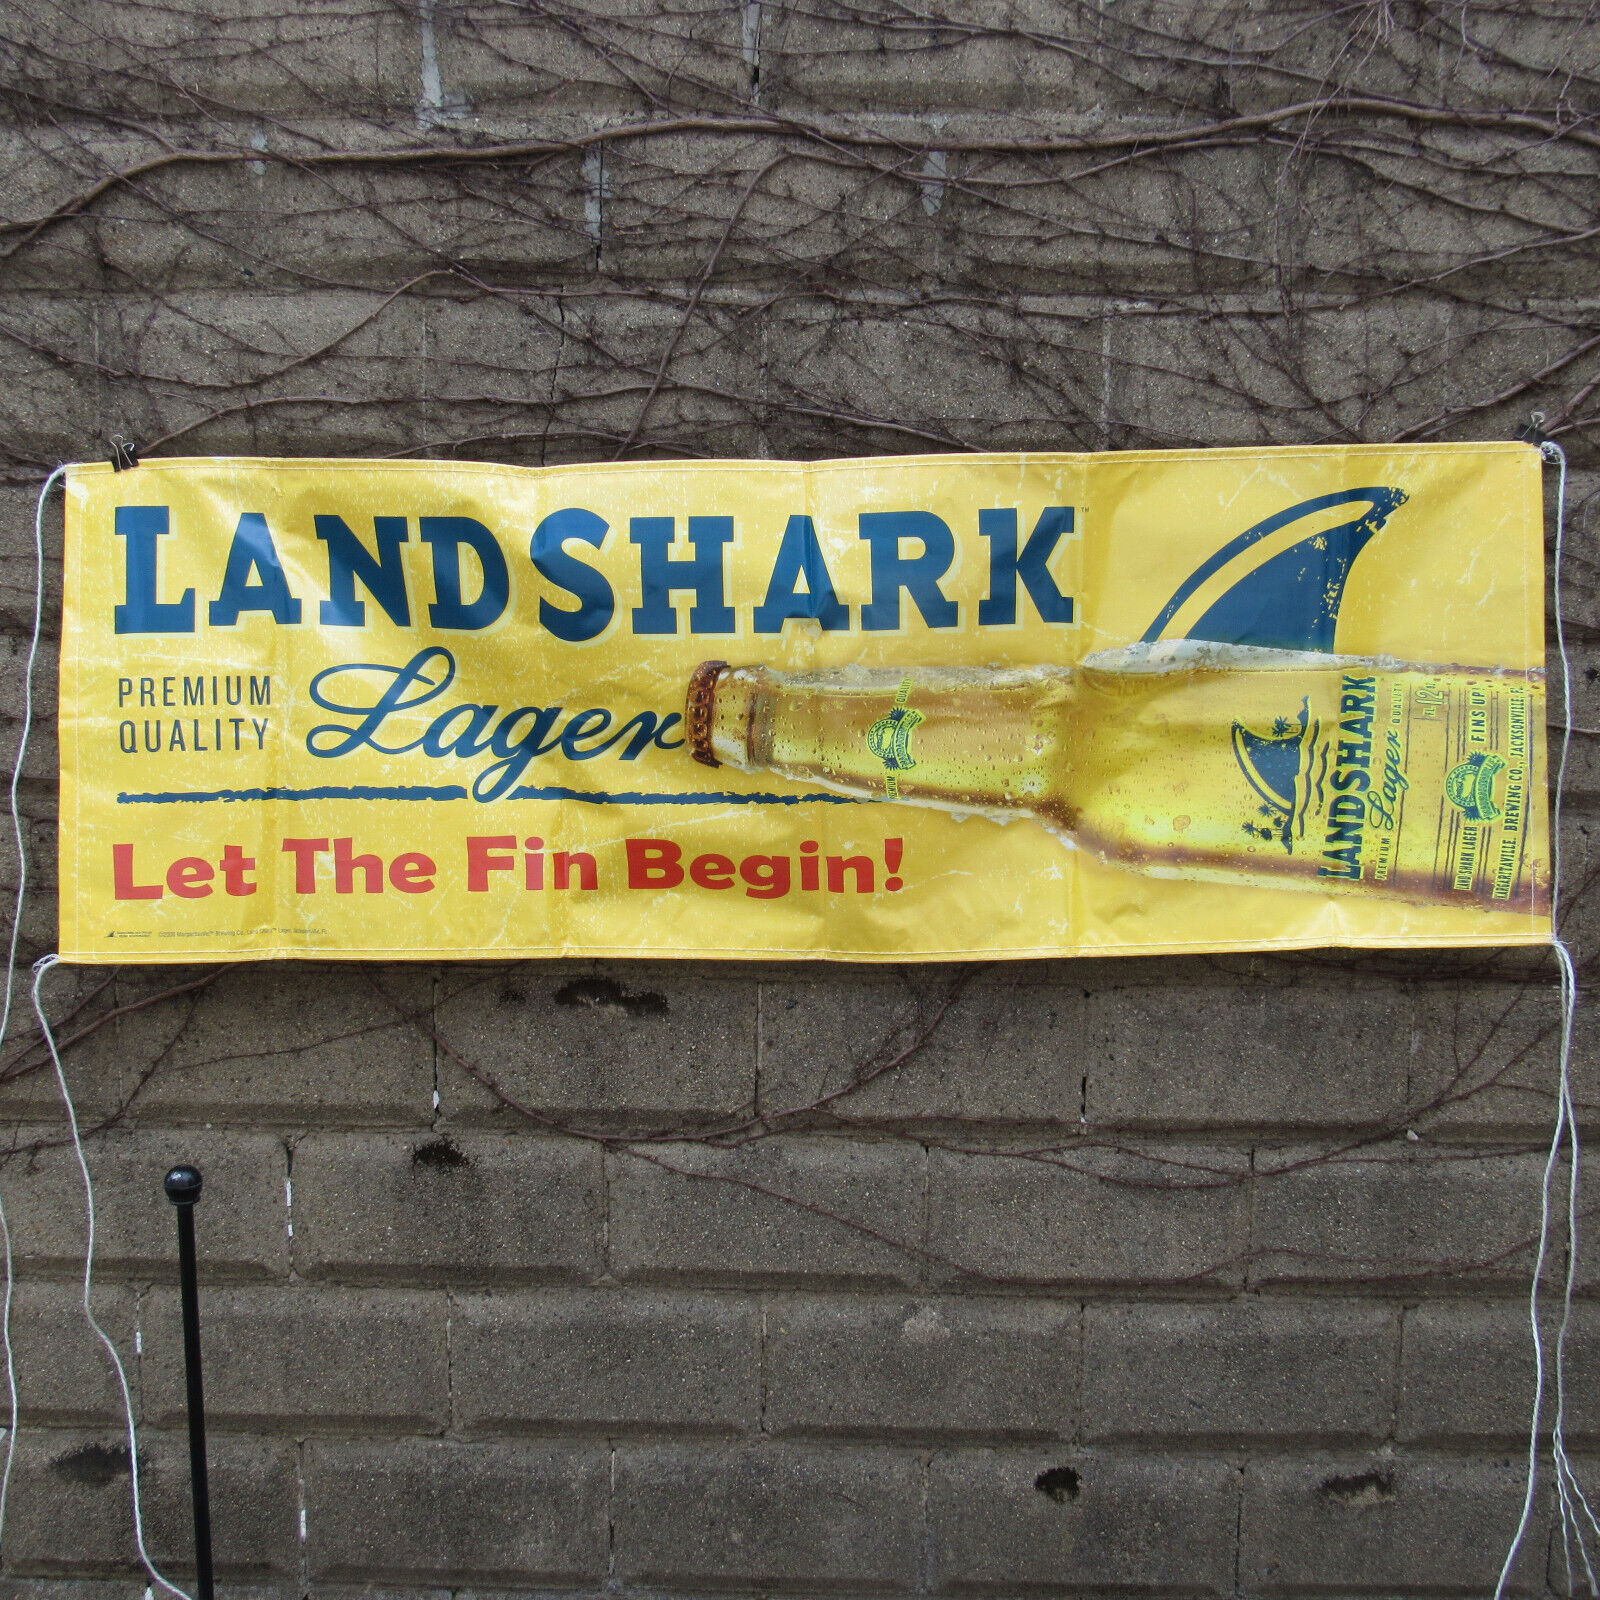 Landshark Lager 6' x 2' Vinyl Banner, Let The Fin Begin, 2008 Margaritaville